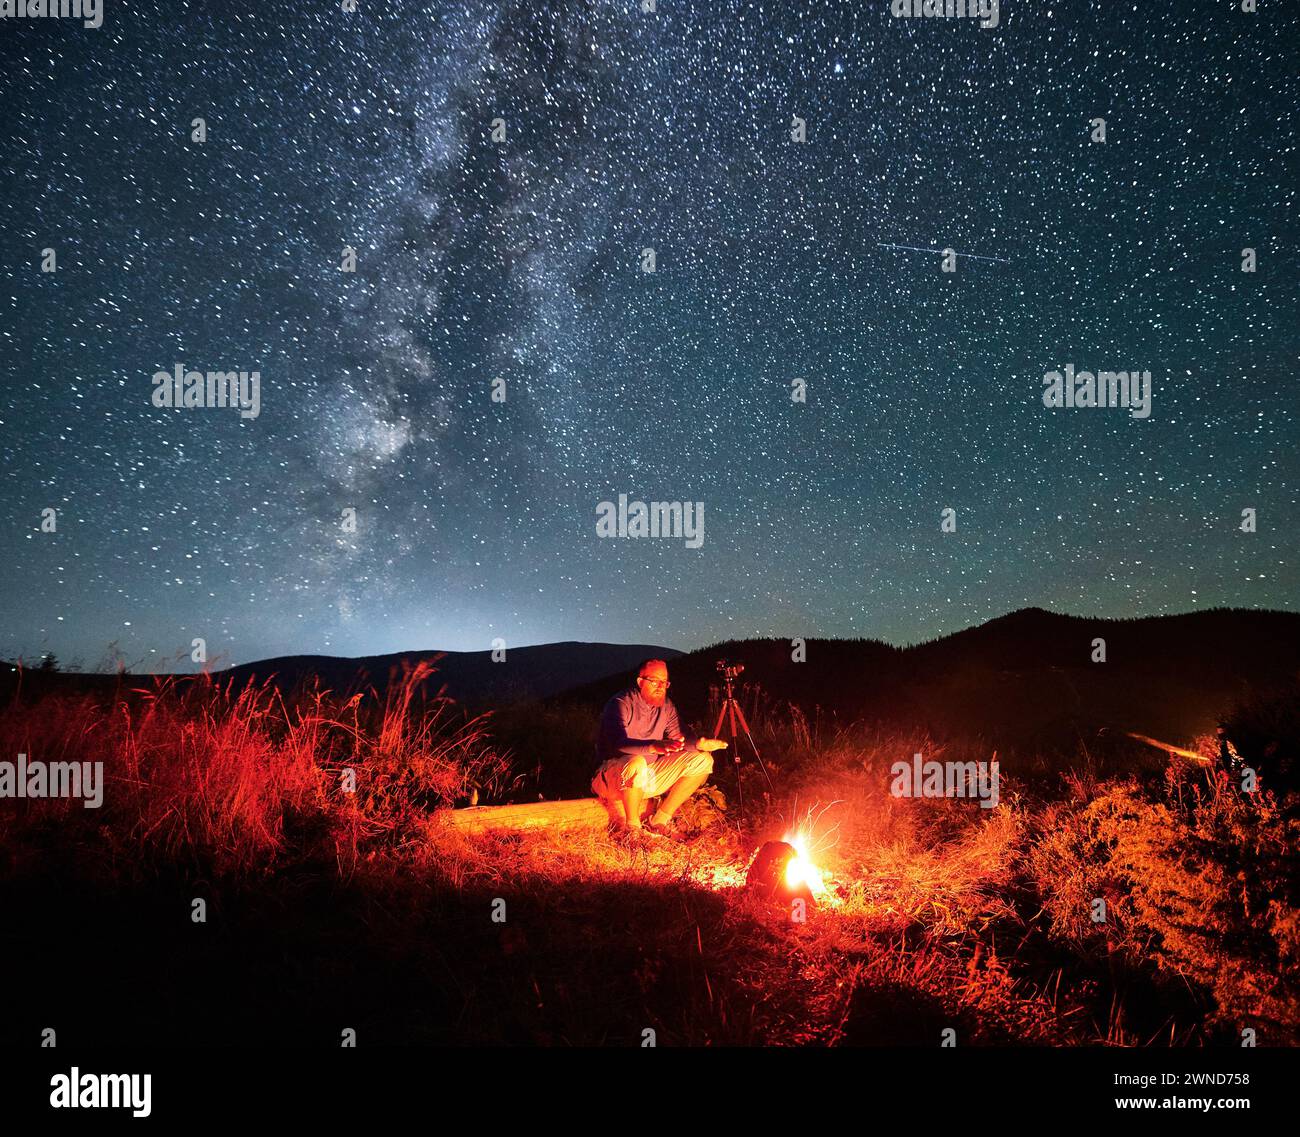 Uomo che scatta foto di cielo stellato con la via Lattea. Fotografo di sesso maschile seduto sul tronco vicino alla macchina fotografica. Uomo con macchina fotografica seduto accanto al fuoco del campo in montagna. Foto Stock